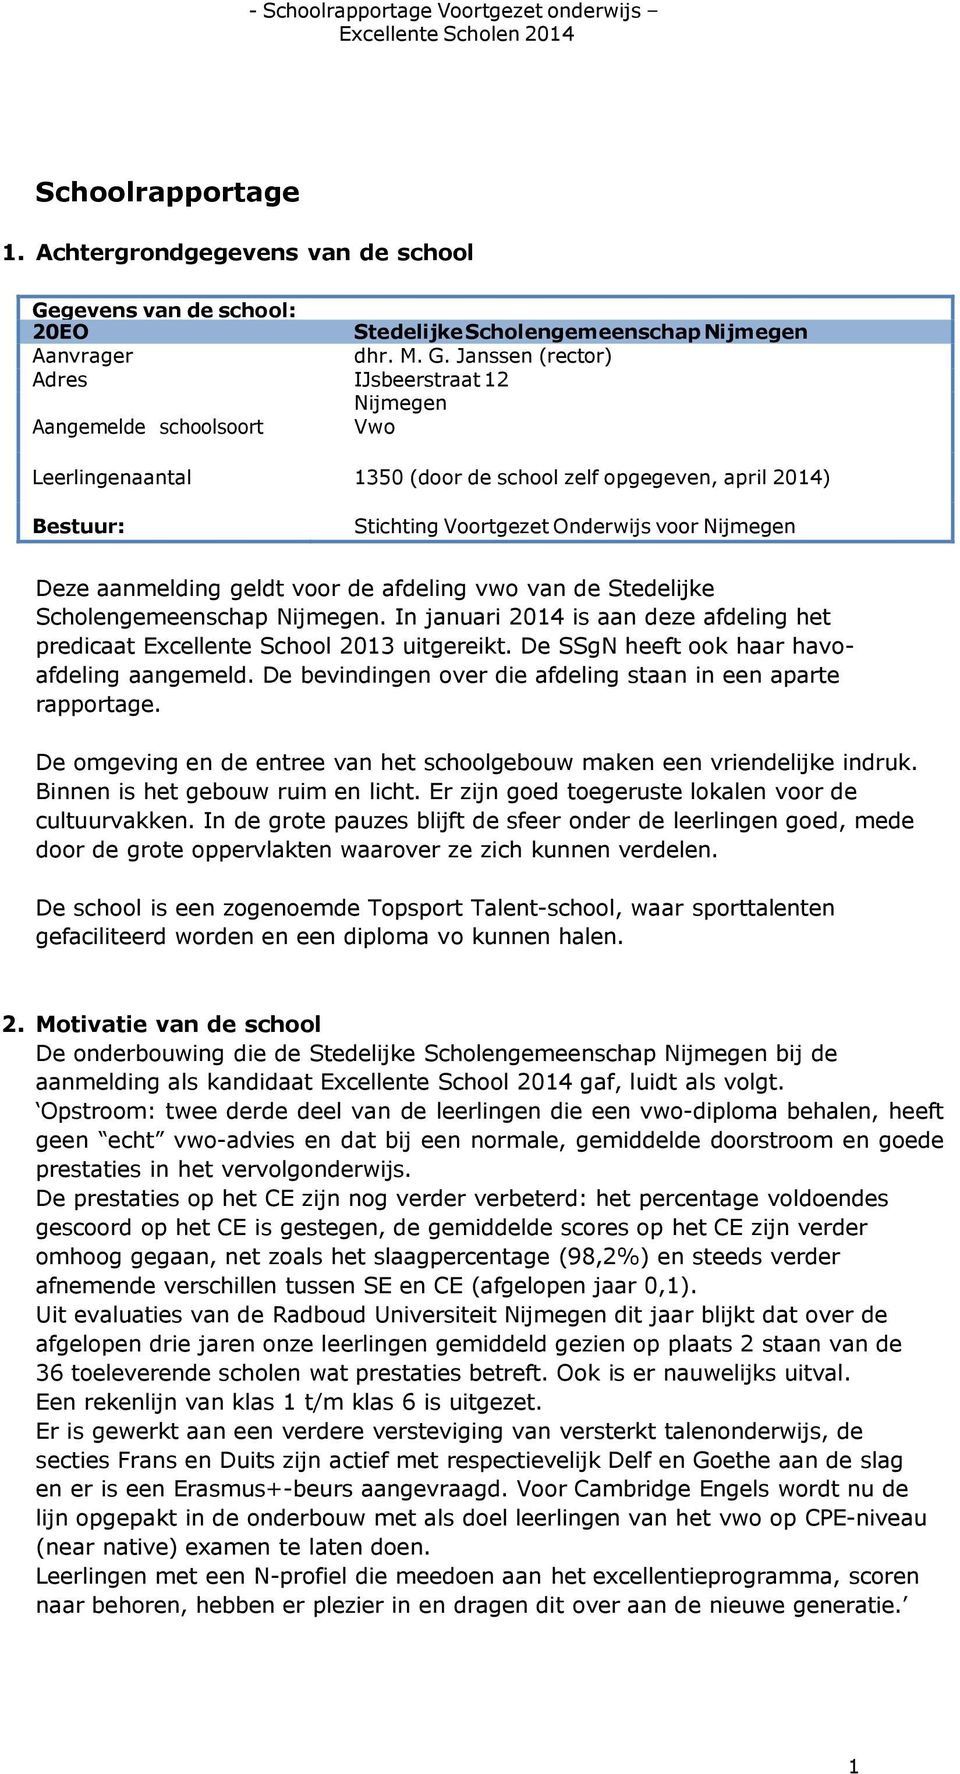 Janssen (rector) Adres IJsbeerstraat 12 Nijmegen Aangemelde schoolsoort Vwo Leerlingenaantal 1350 (door de school zelf opgegeven, april 2014) Bestuur: Stichting Voortgezet Onderwijs voor Nijmegen